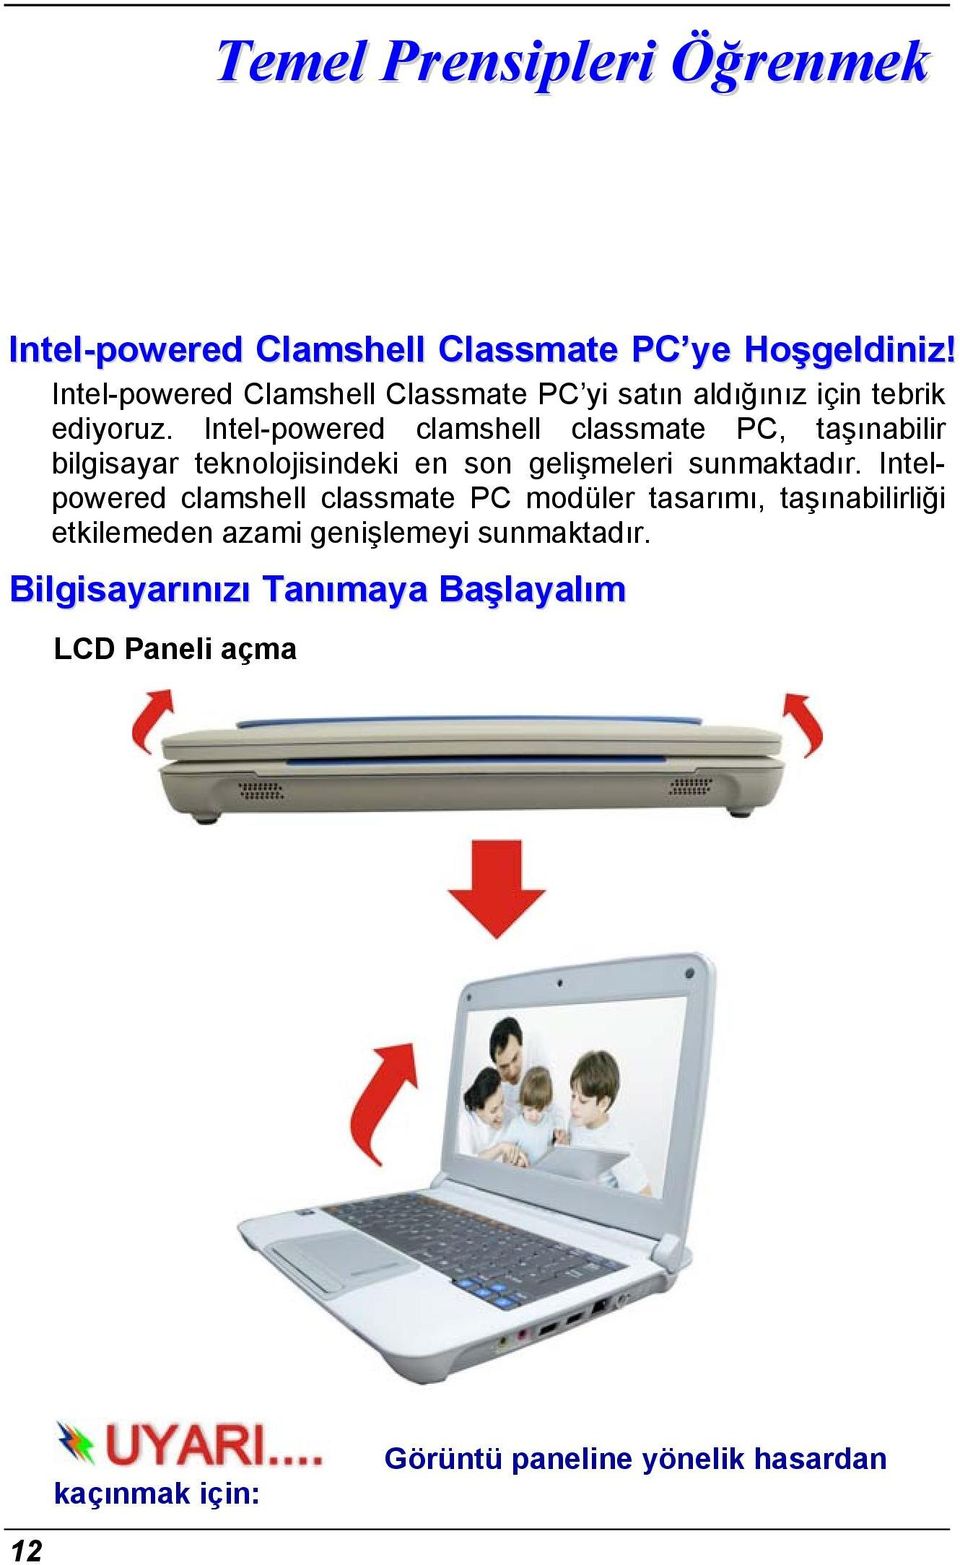 Intel-powered clamshell classmate PC, taşınabilir bilgisayar teknolojisindeki en son gelişmeleri sunmaktadır.